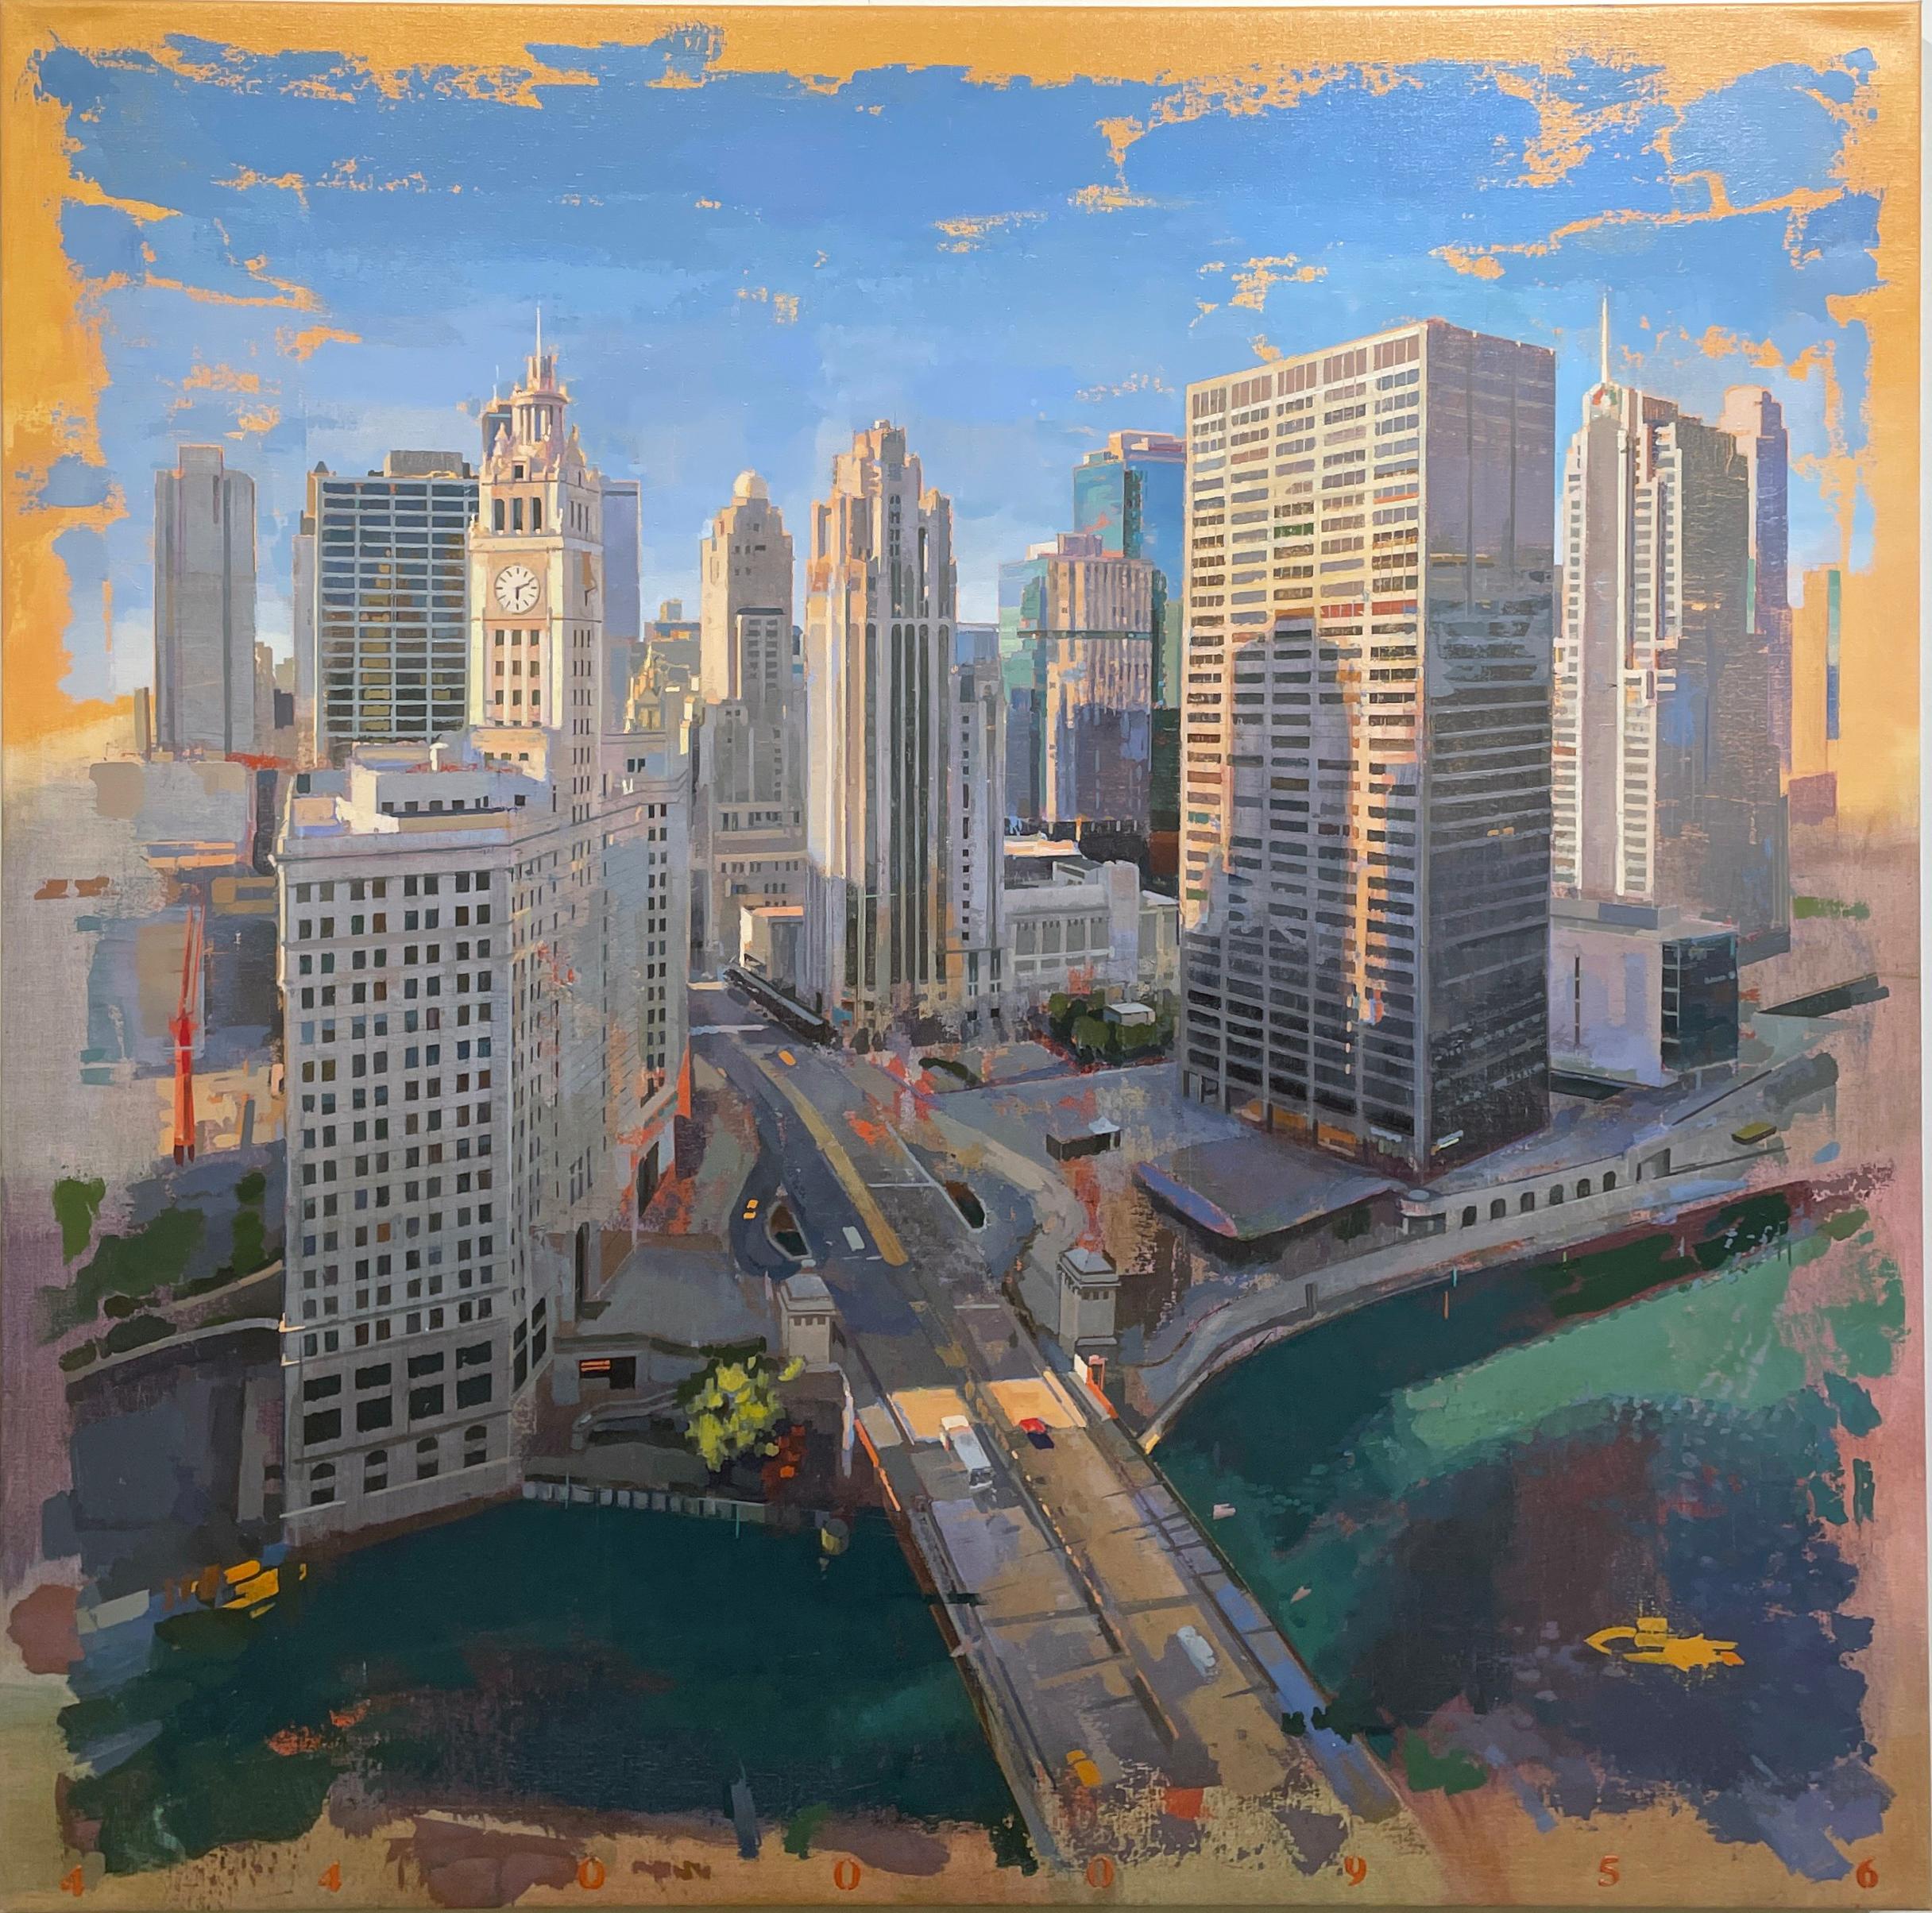 Chicago von London – Vogel-Eye- Ansicht aus dem London House Hotel, Chicago, IL (Zeitgenössisch), Painting, von Albert Vidal Moreno